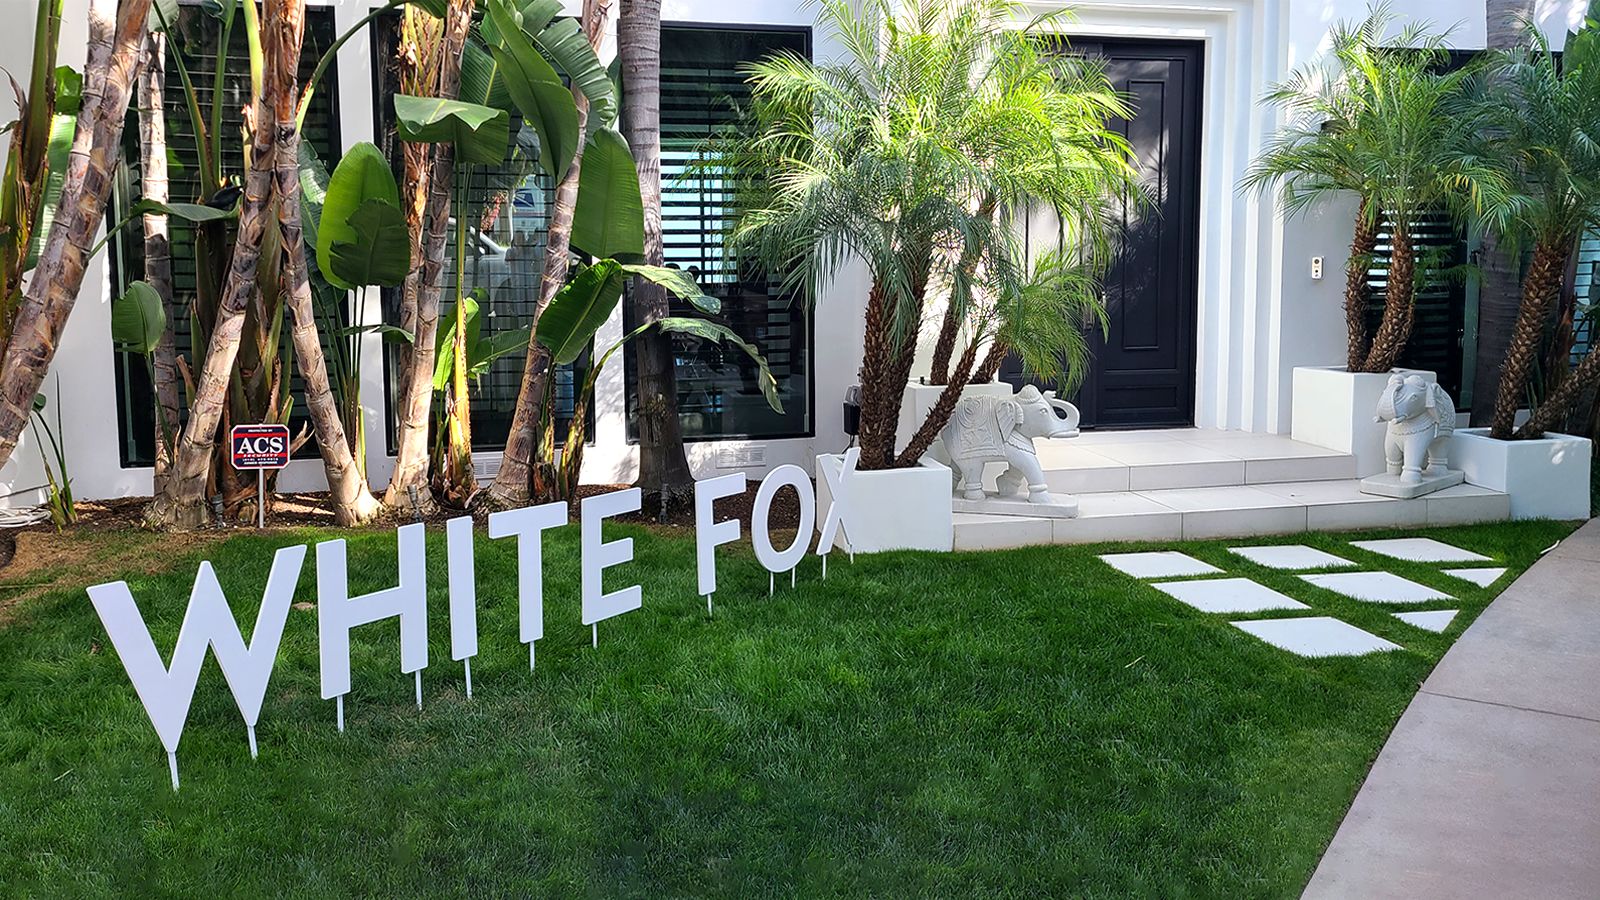 White fox 3D letters